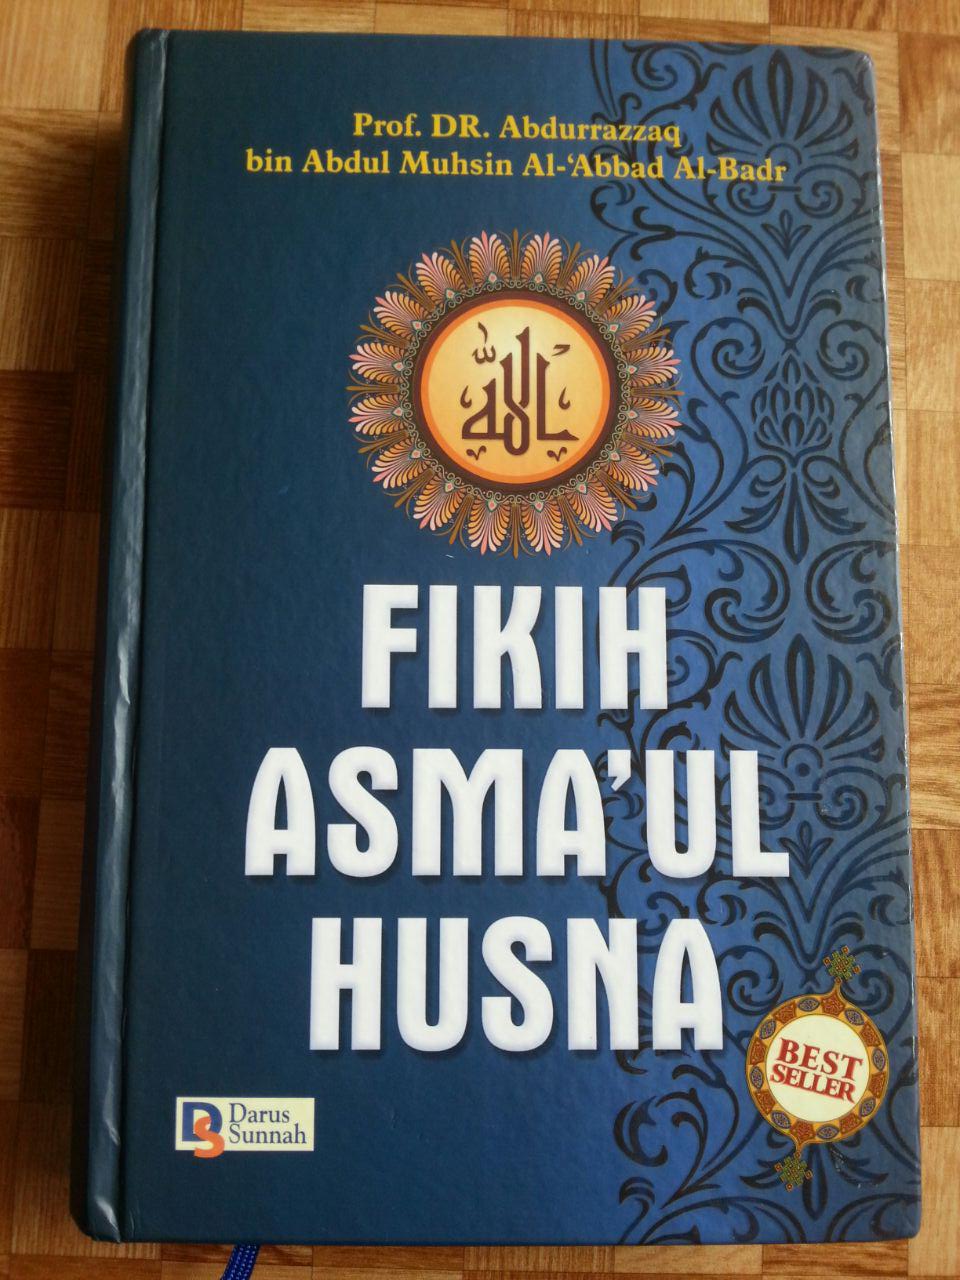 Buku Yang Membahas Asmaul Husna - KibrisPDR